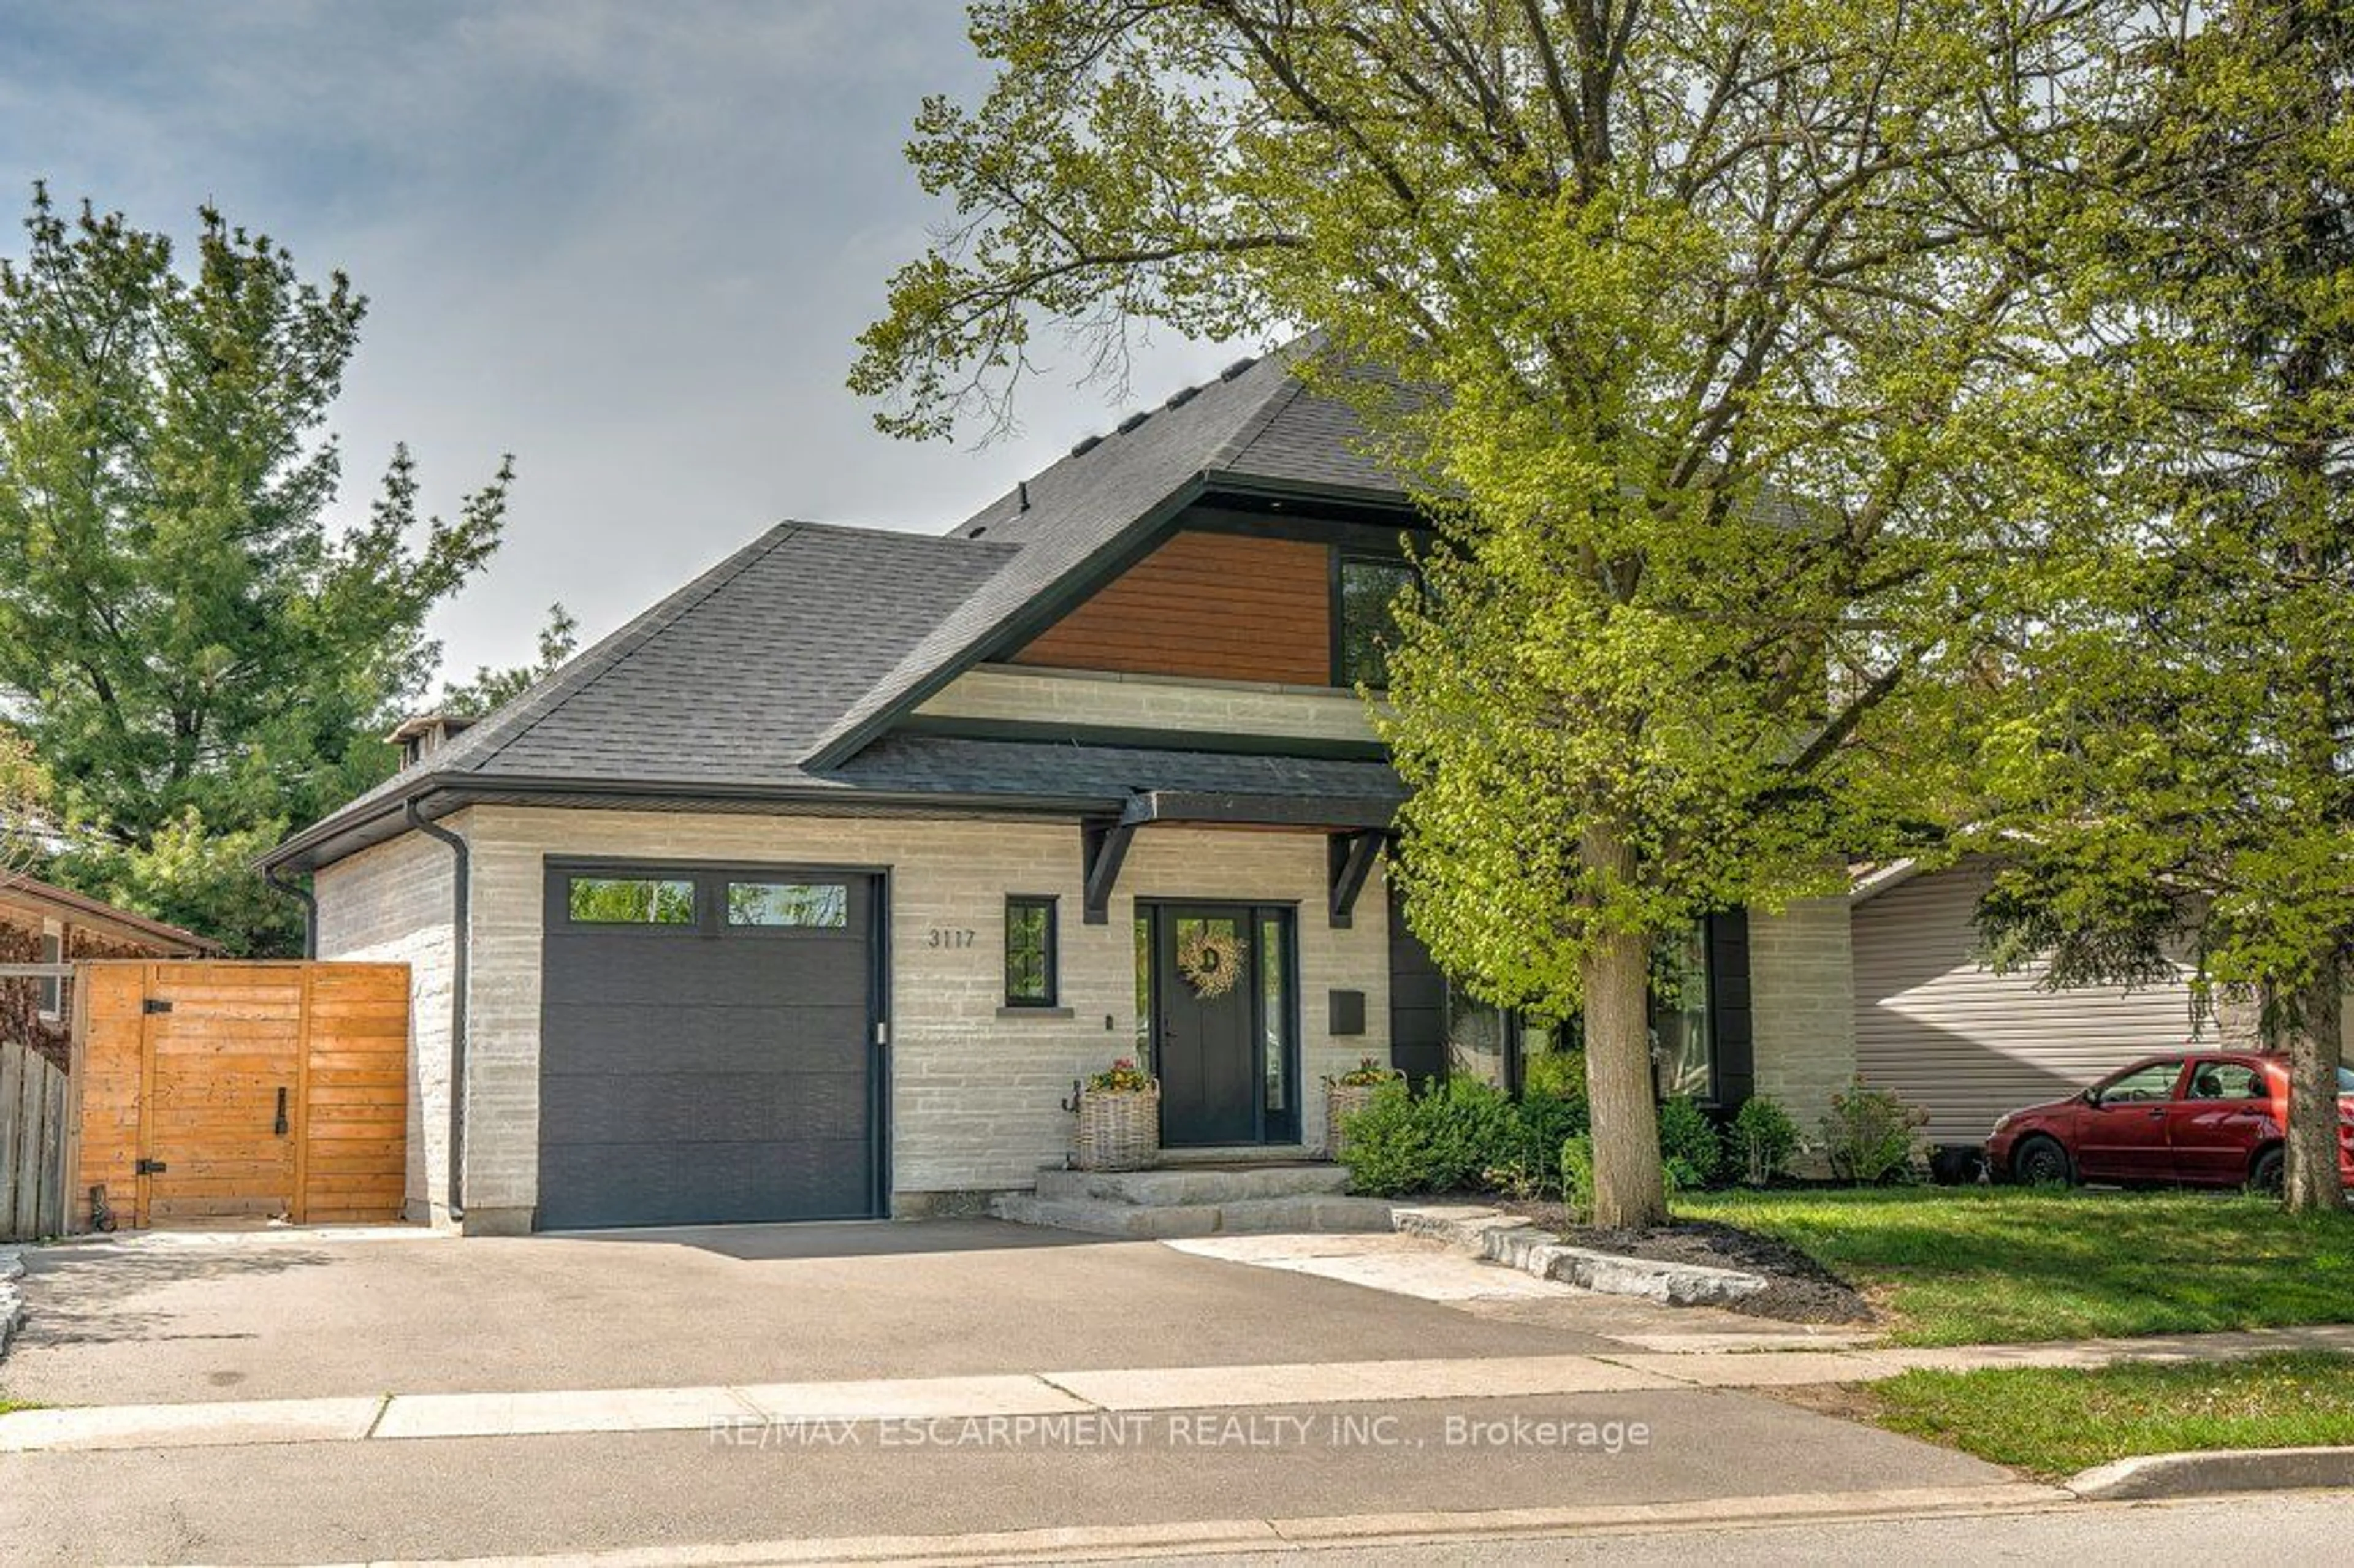 Home with brick exterior material for 3117 Centennial Dr, Burlington Ontario L7M 1B8